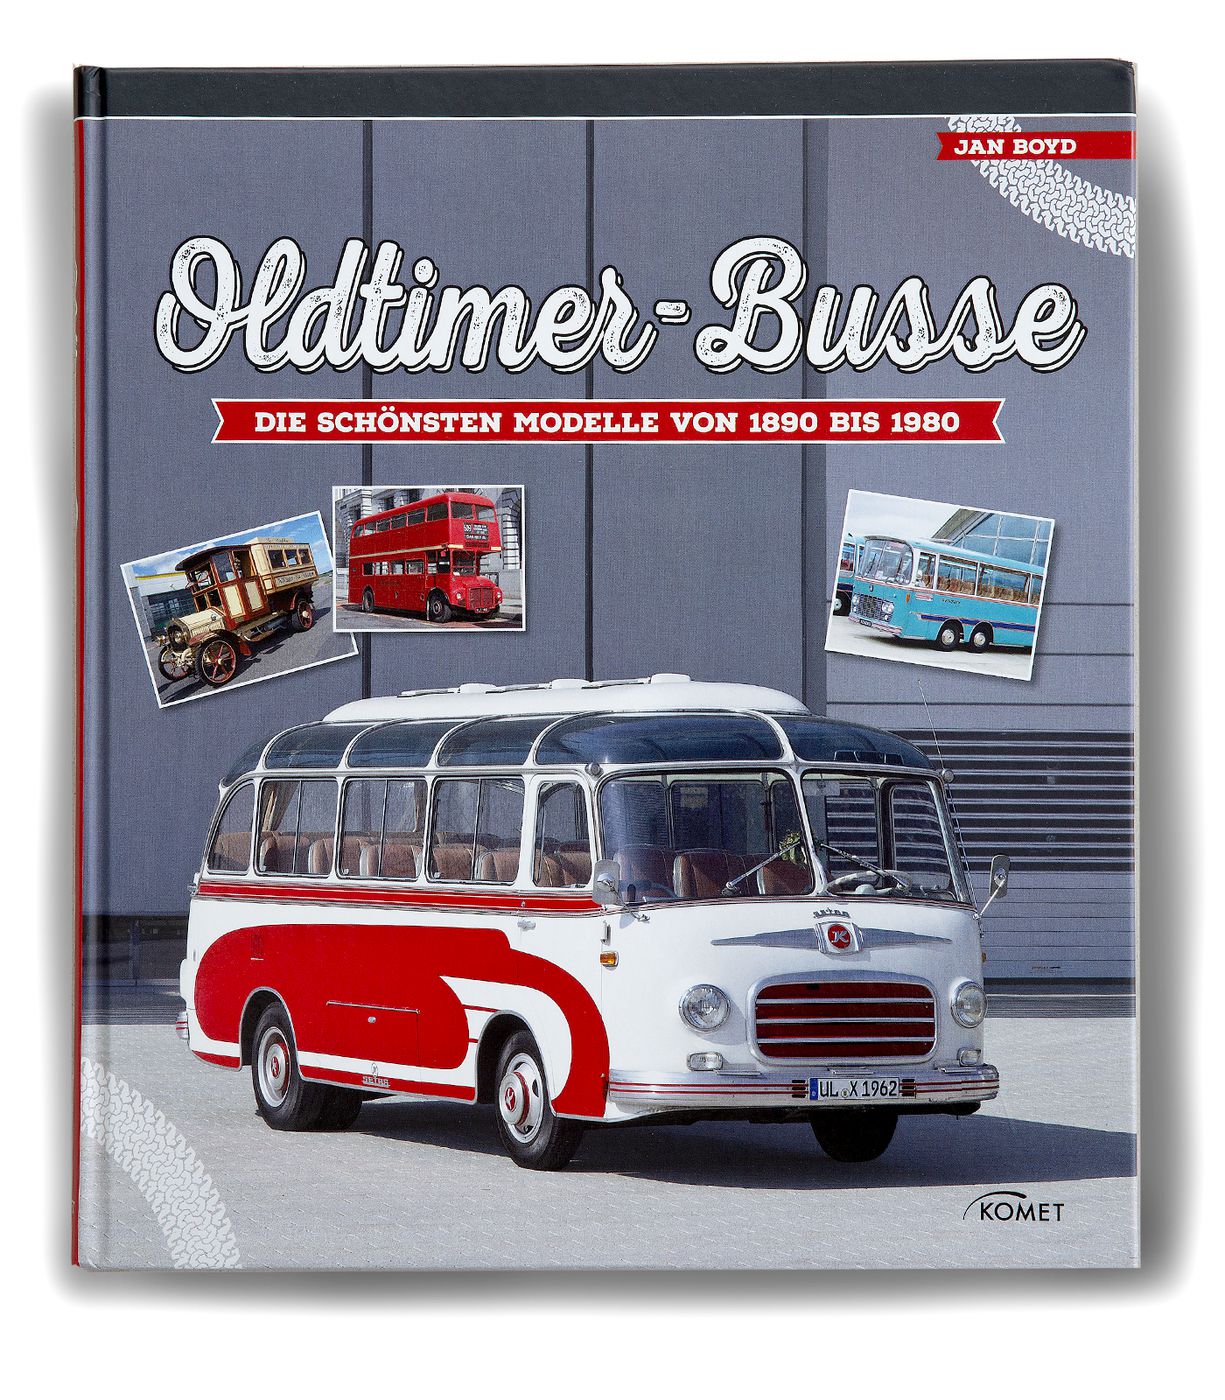 Oldtimer-Busse
Oldtimer-Busse
Oldtimer-Busse